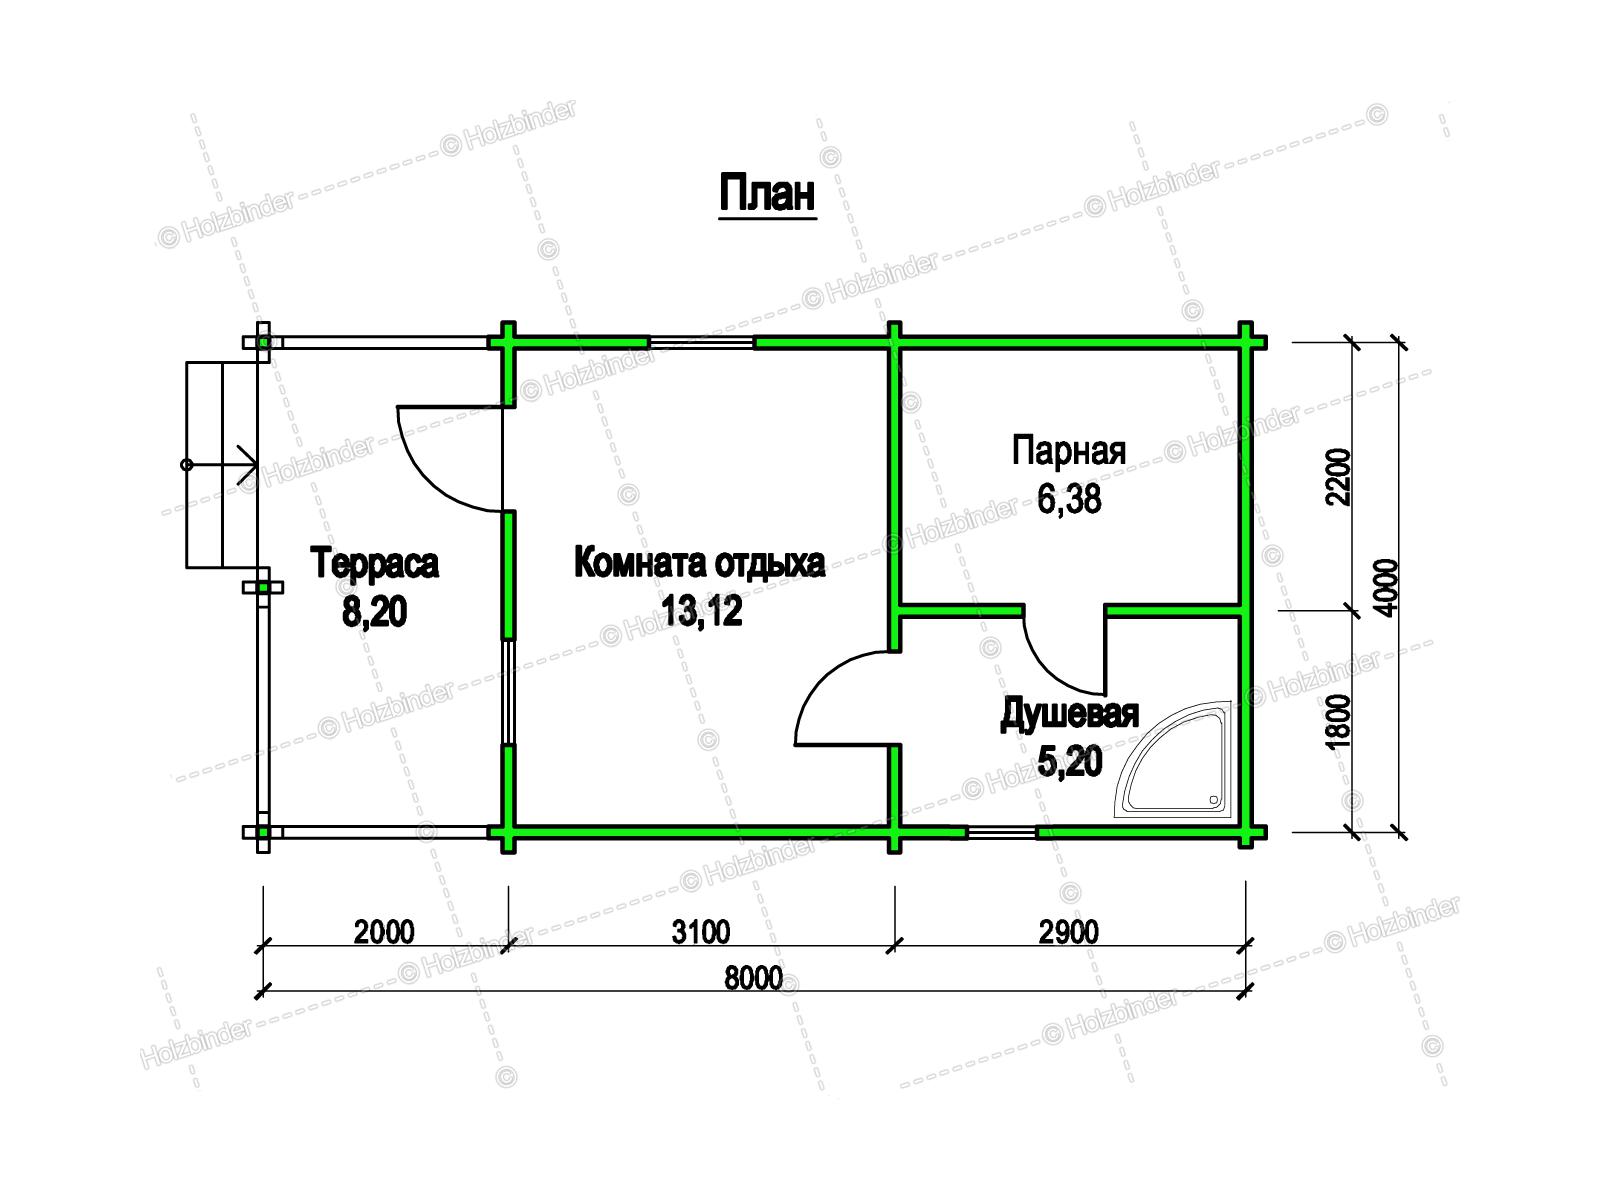 Проект бани размером 4 на 5 (57 фото): планировка интерьера внутри помещения площадью 5х4, план помещения метражом 4х5, мойка и парилка отдельно